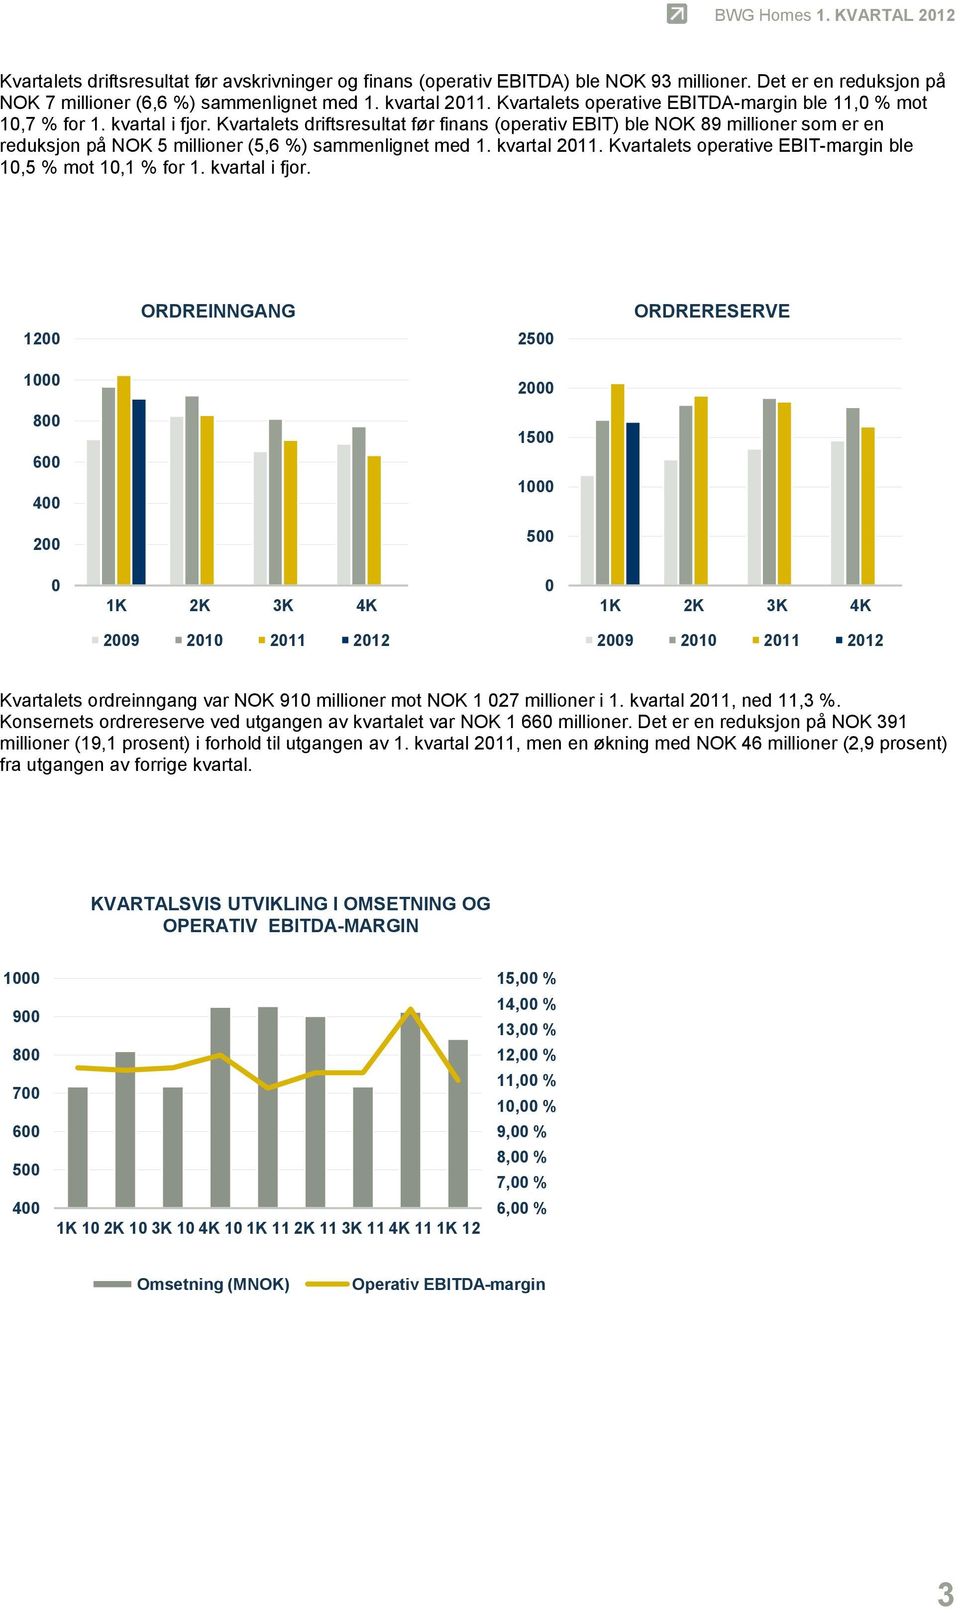 Kvartalets driftsresultat før finans (operativ EBIT) ble NOK 89 millioner som er en reduksjon på NOK 5 millioner (5,6 %) sammenlignet med 1. kvartal 2011.